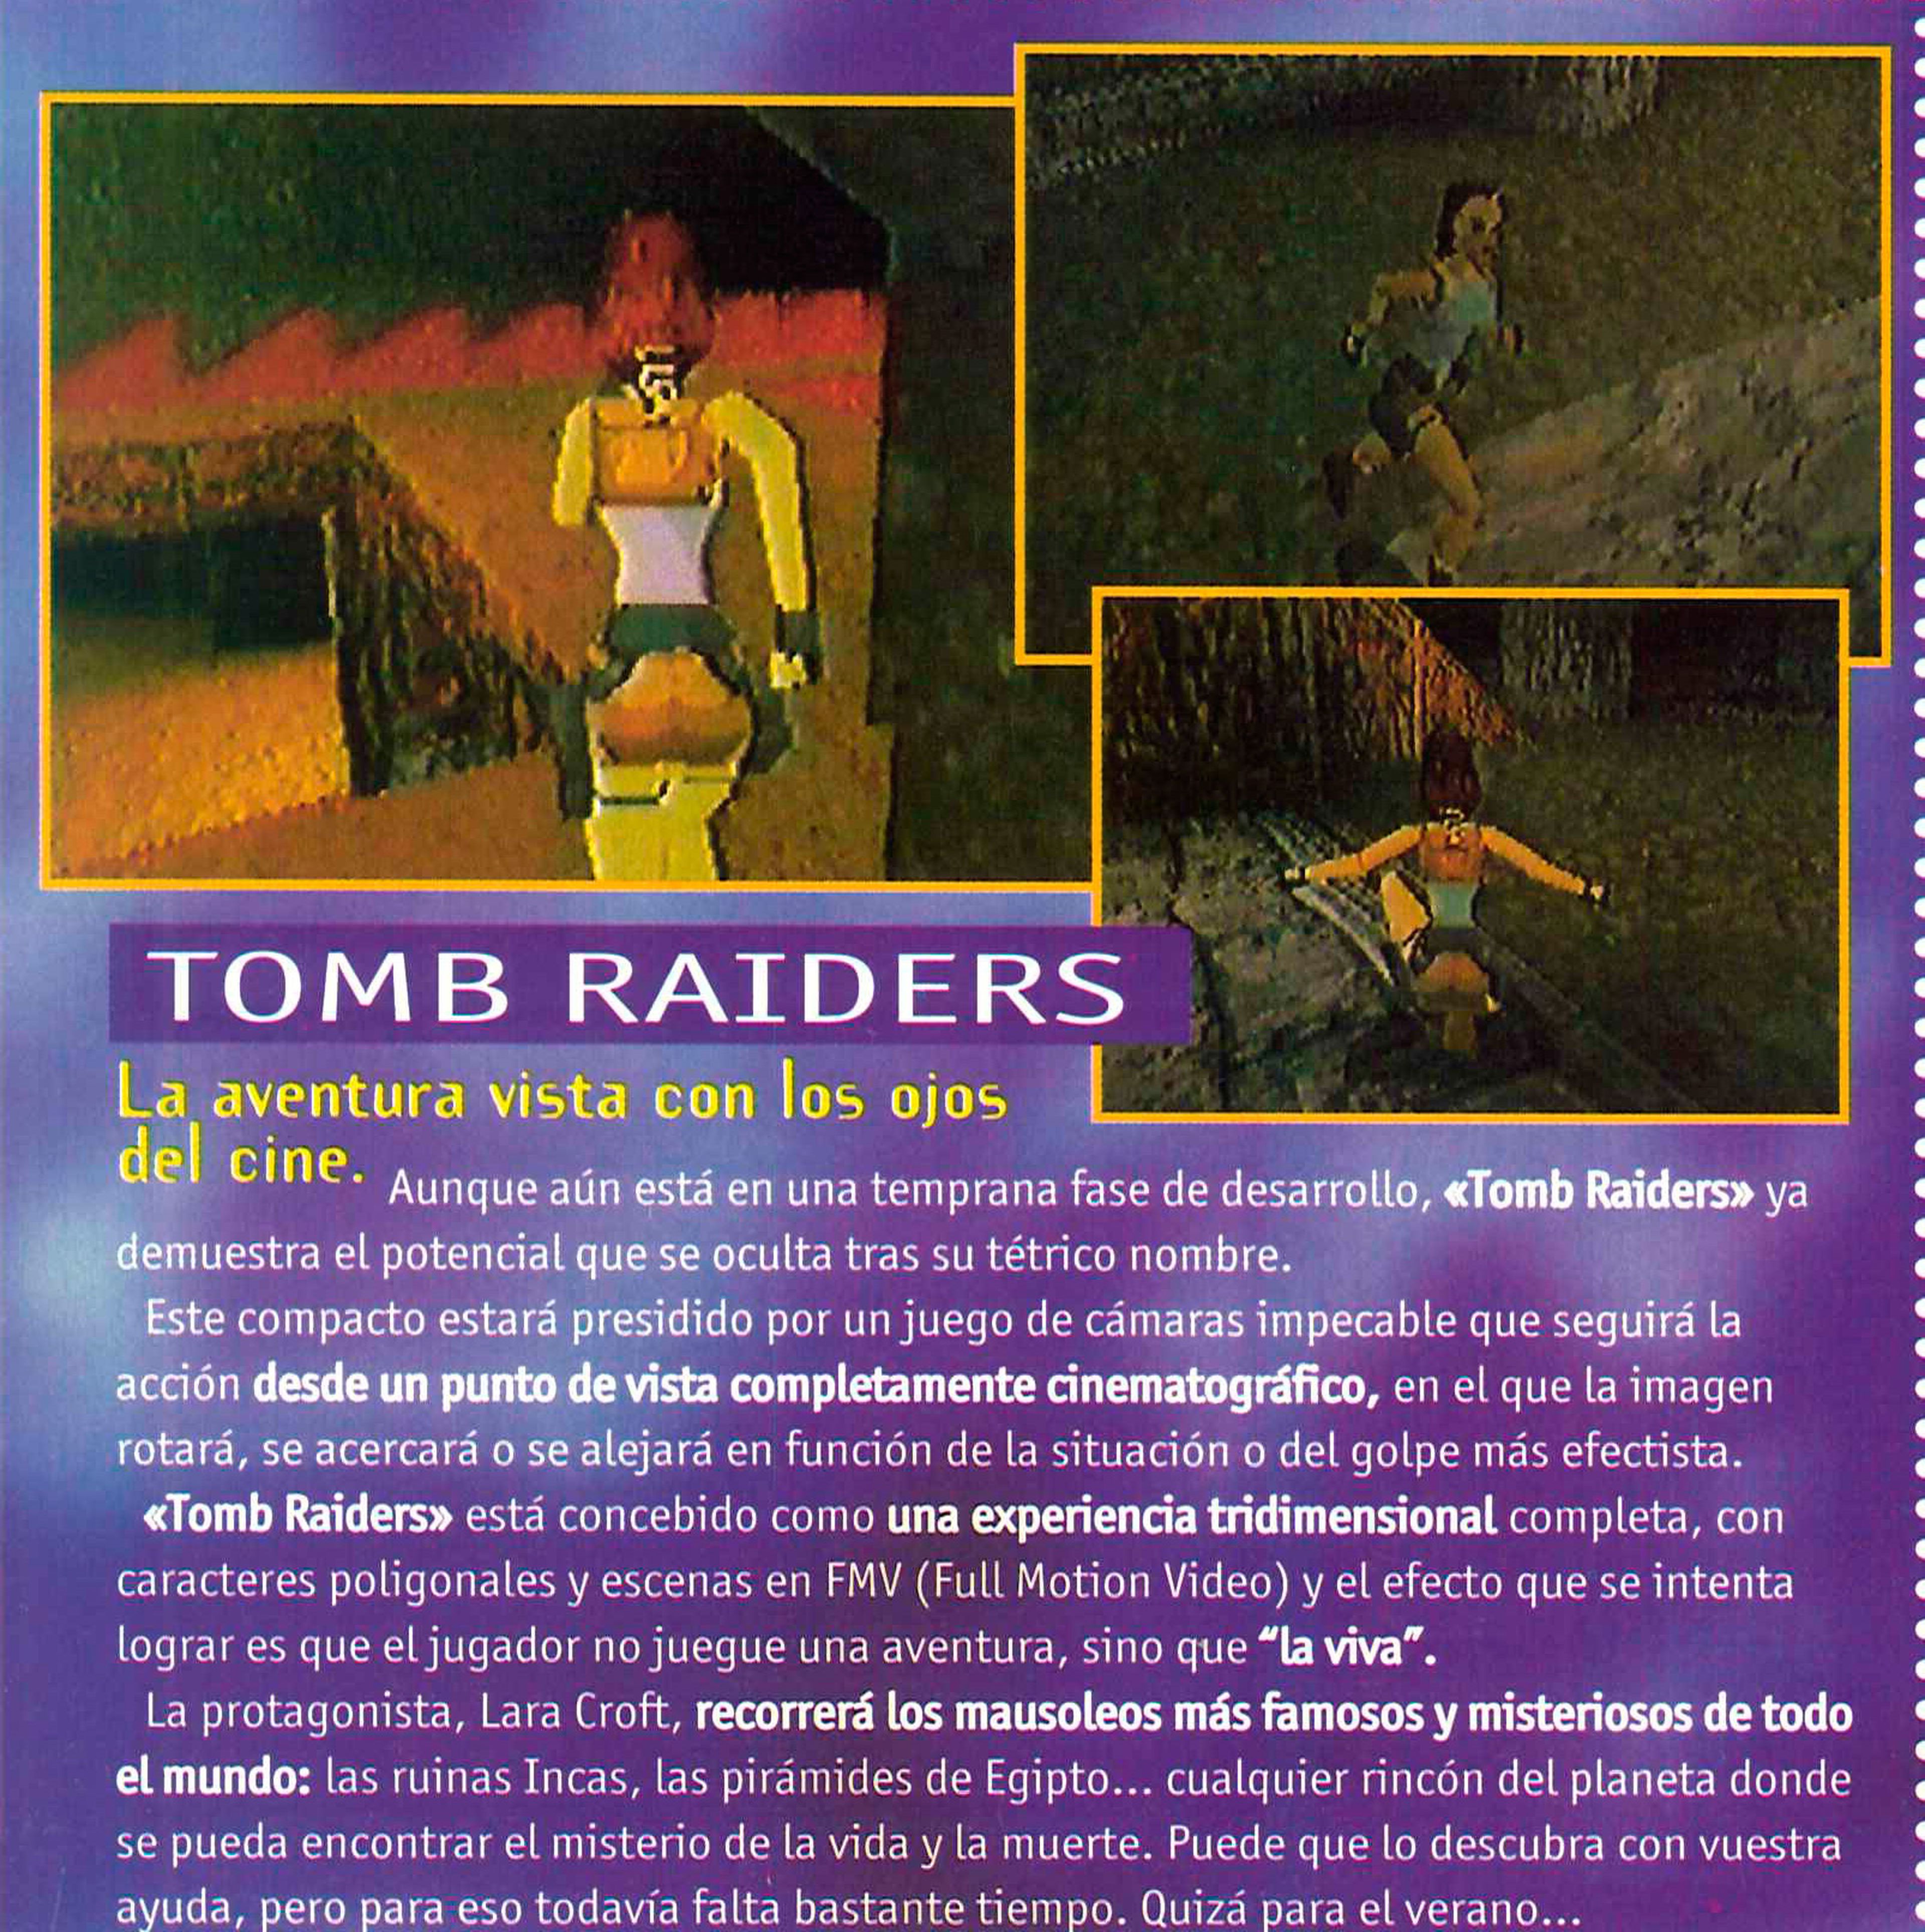 Primeras imágenes de Tomb "Raiders", en el número 54 de Hobby Consolas (Marzo 1996)